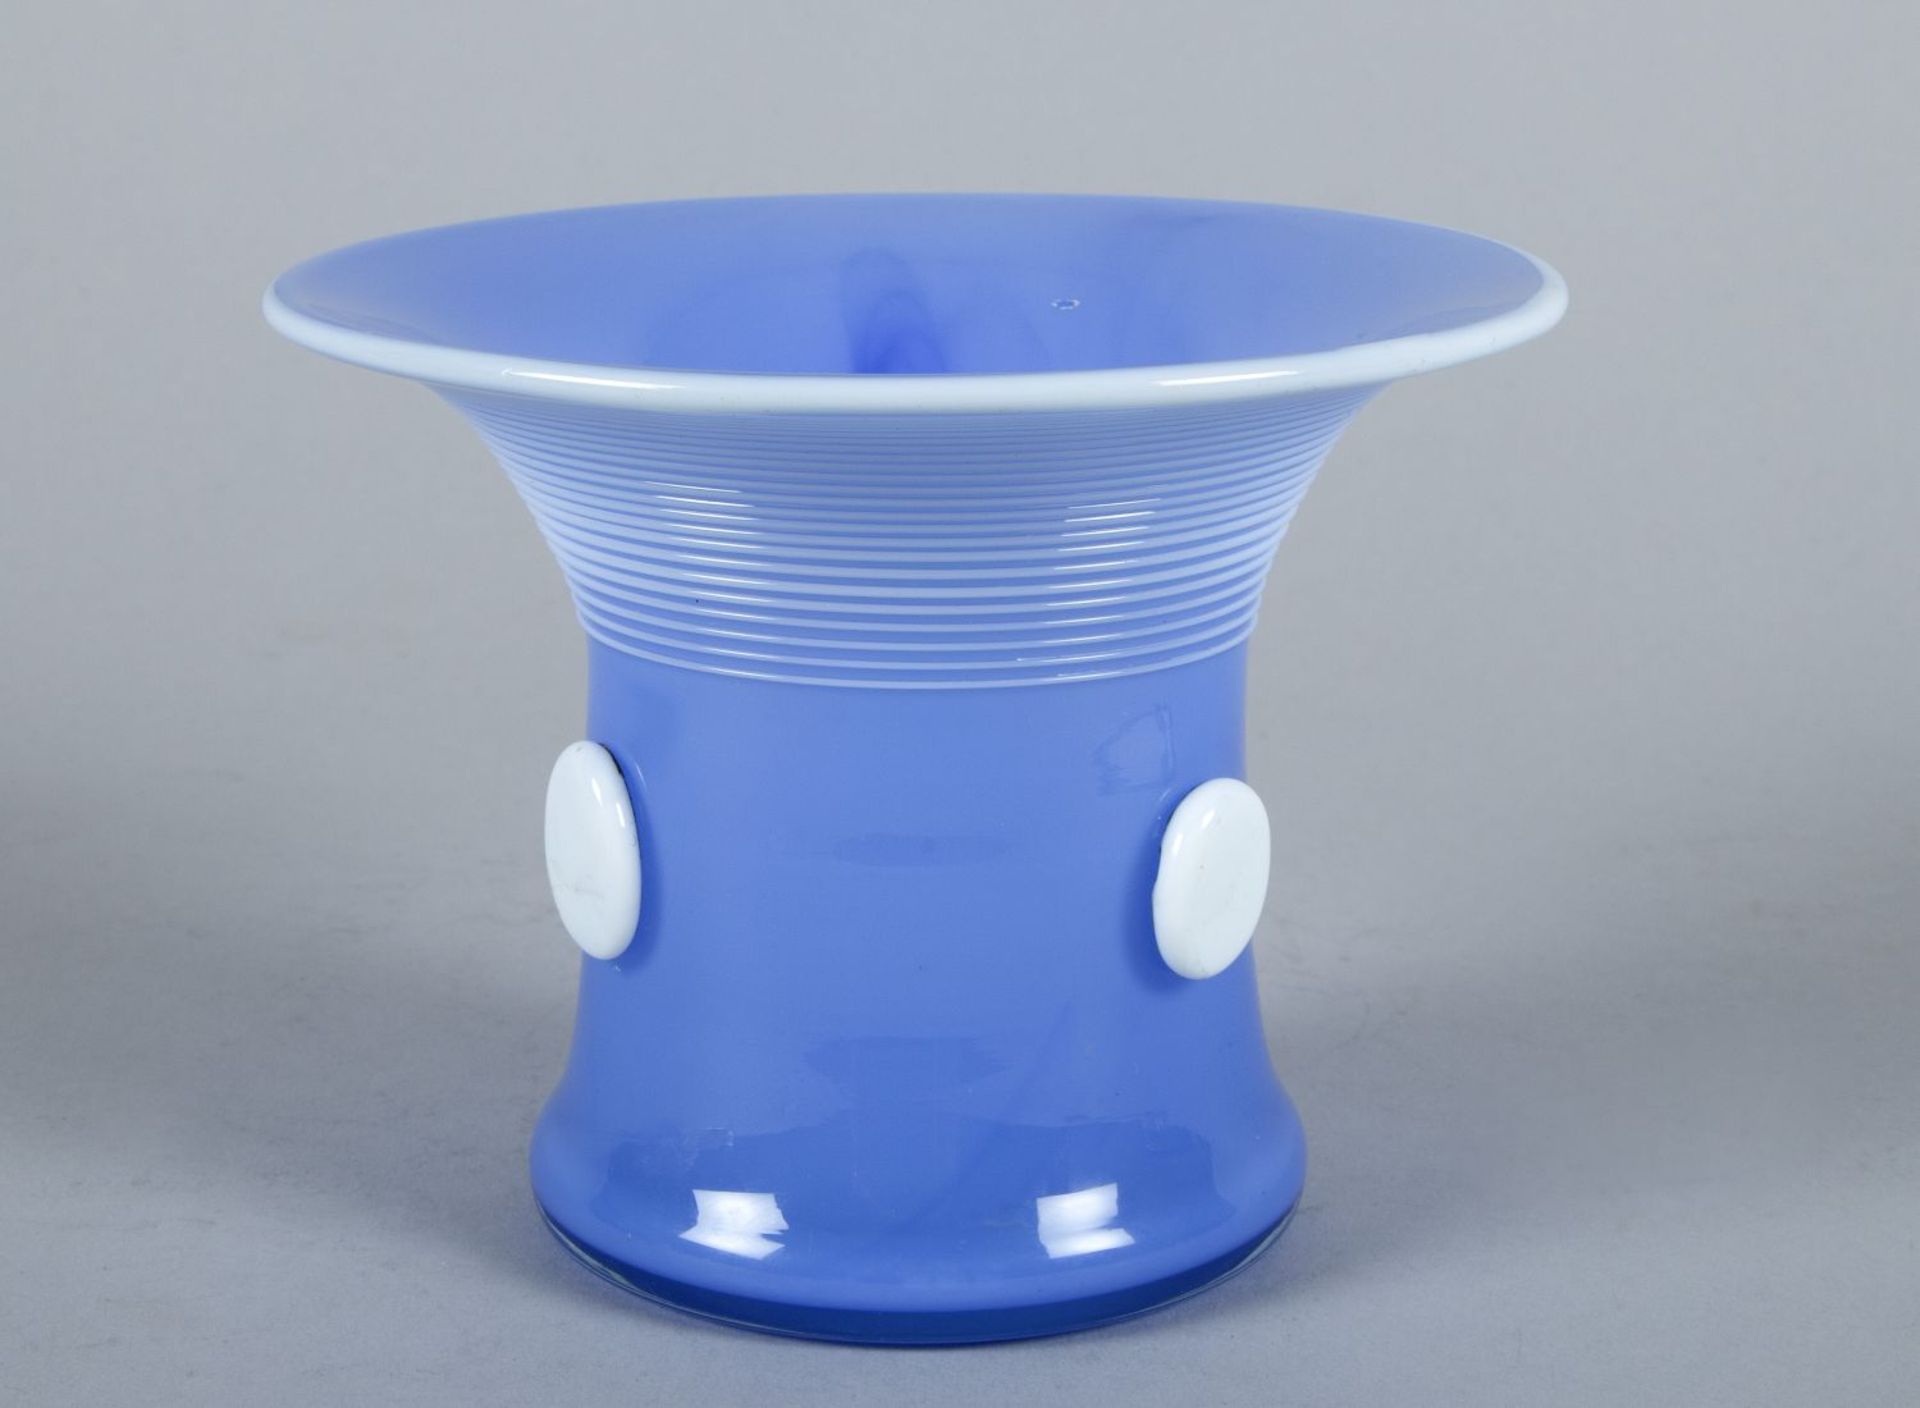 Vase "Tango Blau" Farbloses Glas,